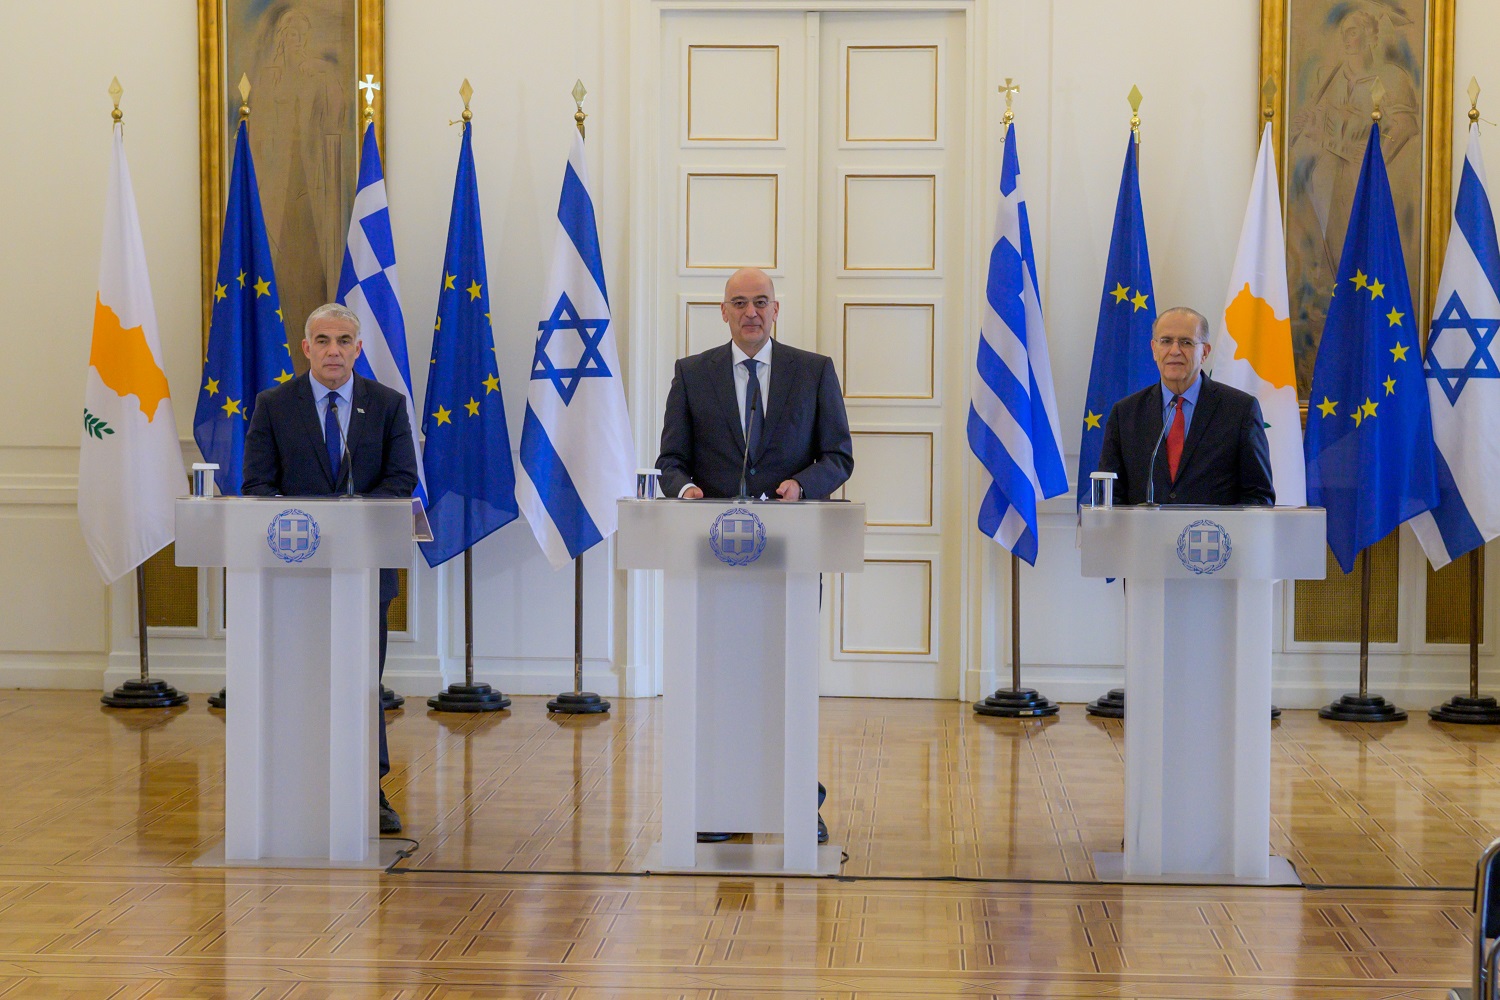 Μπορεί η αποκατάσταση των σχέσεων Τουρκίας – Ισραήλ να διαταράξει τους δεσμούς με την Ελλάδα;